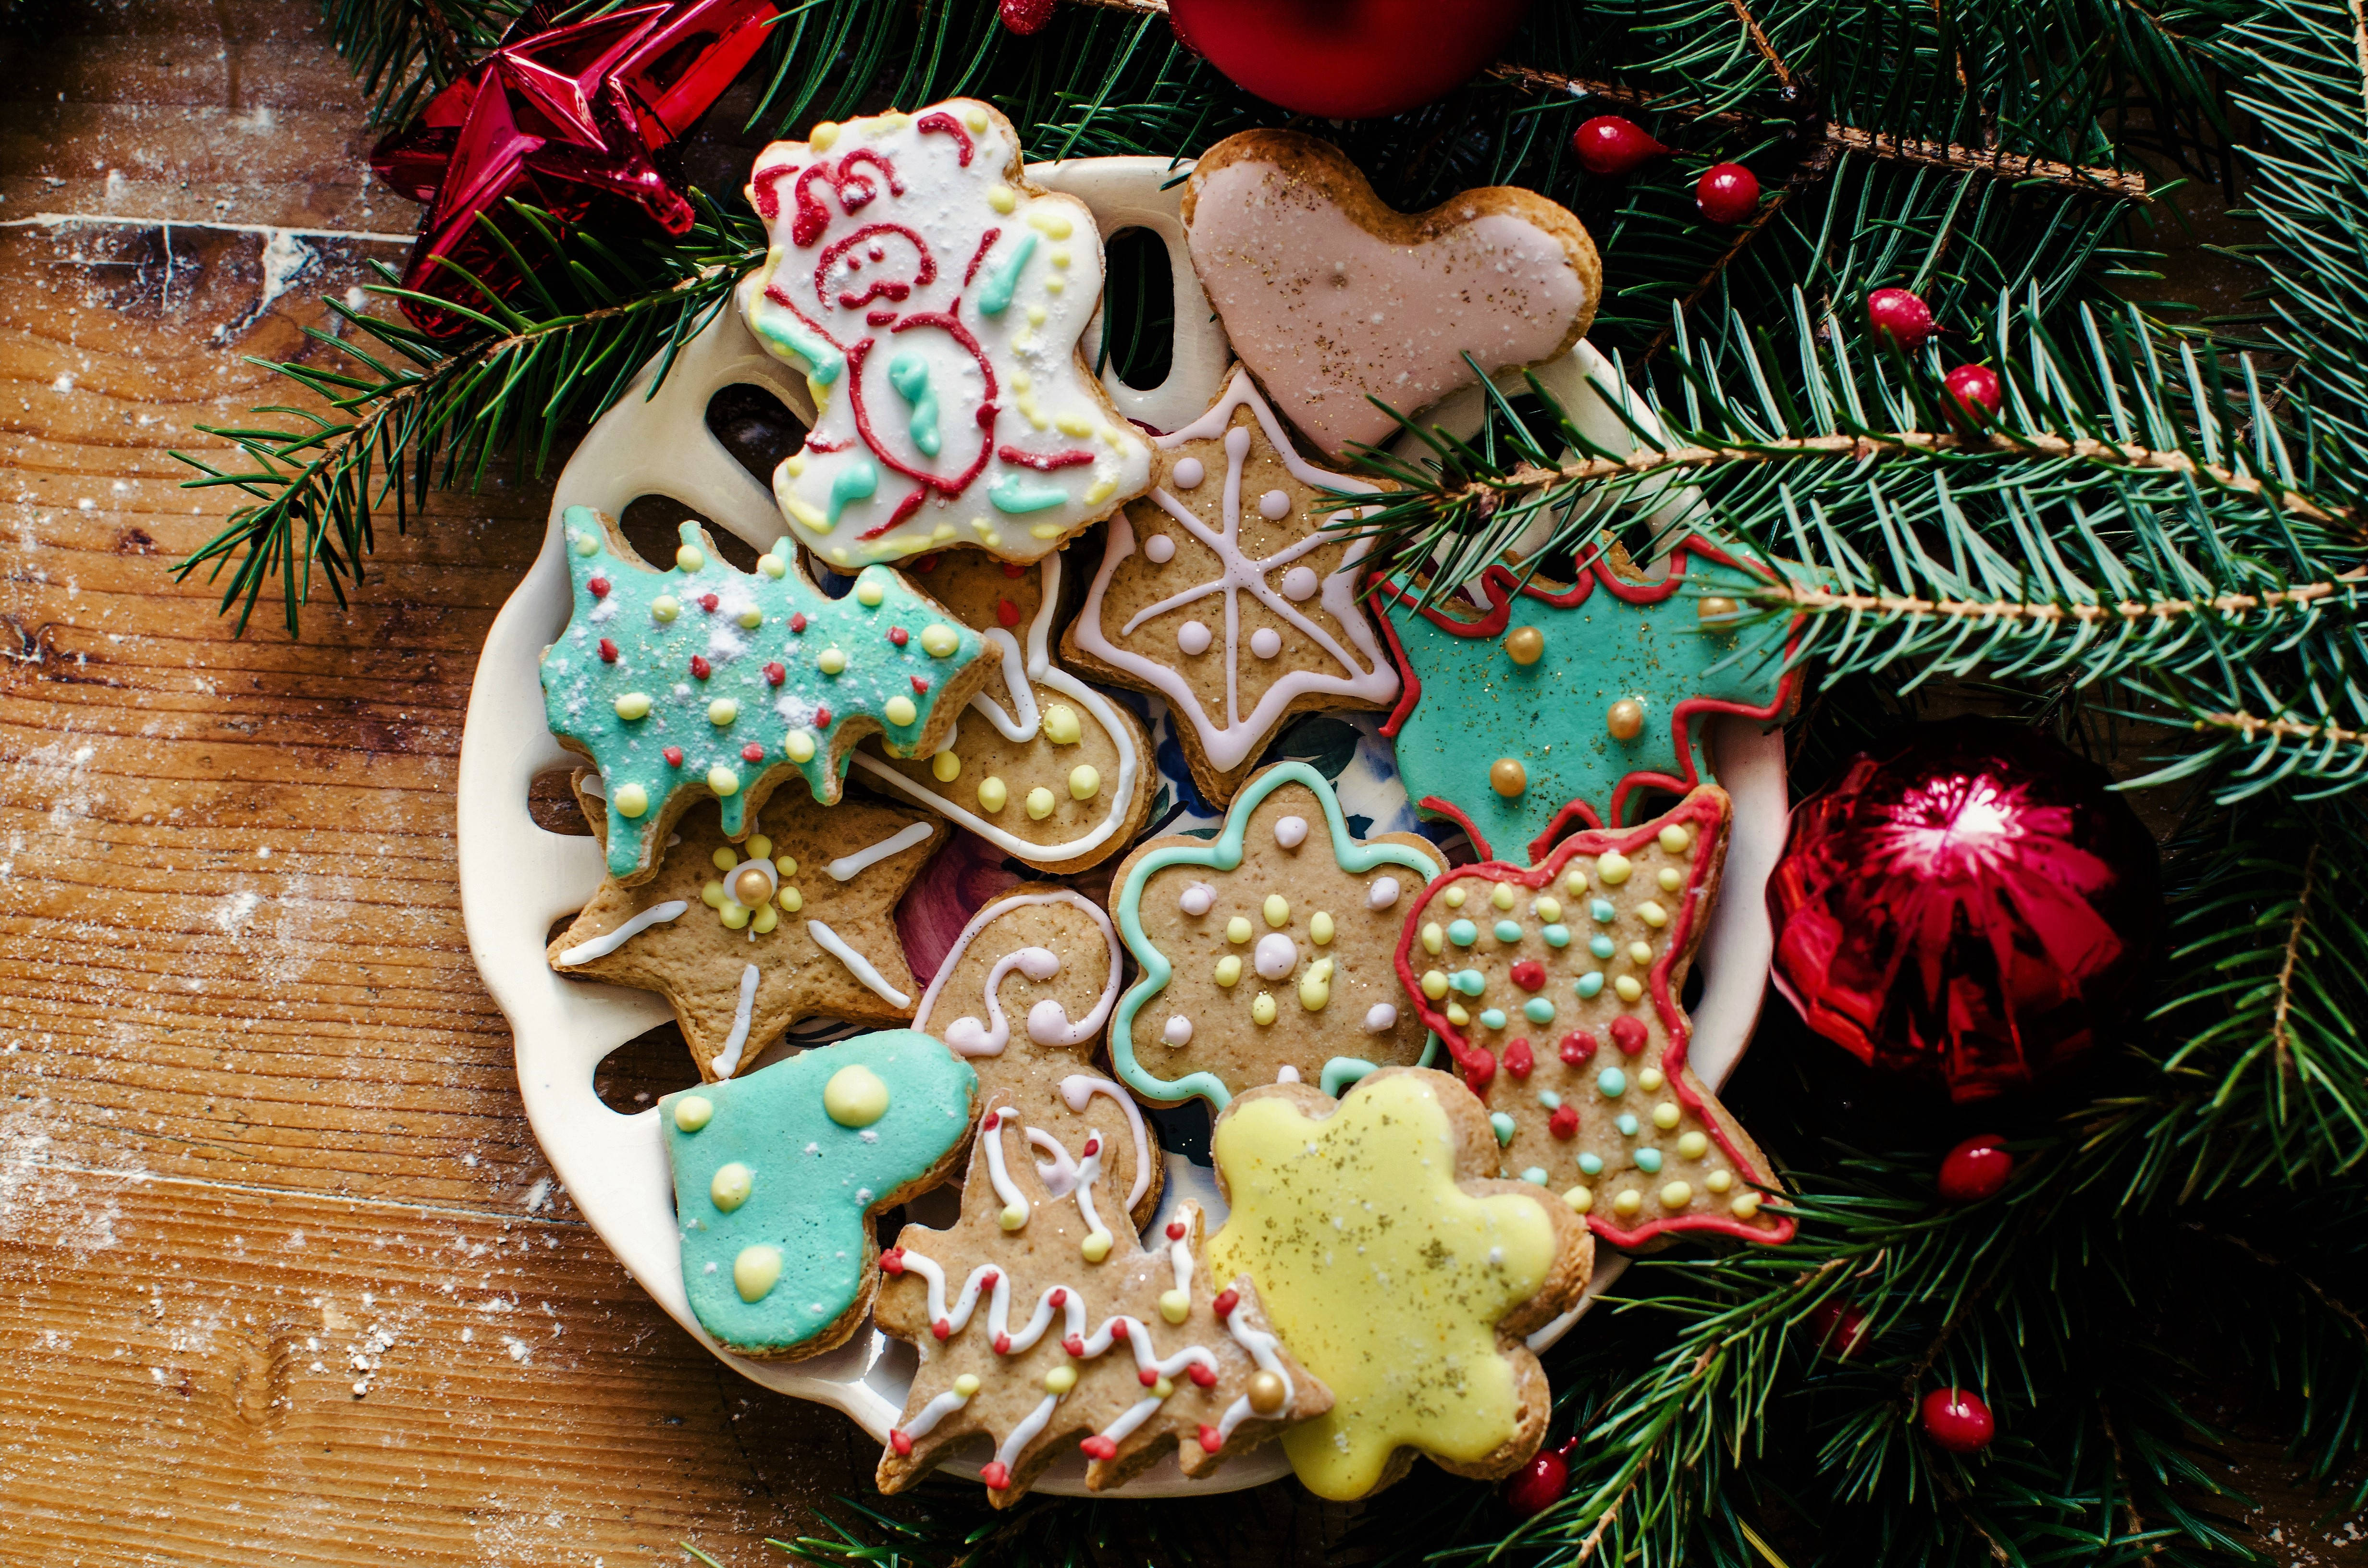 Hãy cùng chiêm ngưỡng bức hình nền Christmas ball cookies đầy sắc màu và ấn tượng, nơi những chiếc bánh quả cầu giáng sinh sẽ làm cho bạn thực sự tưởng nhớ đến một mùa lễ hội ấm áp và tuyệt vời.